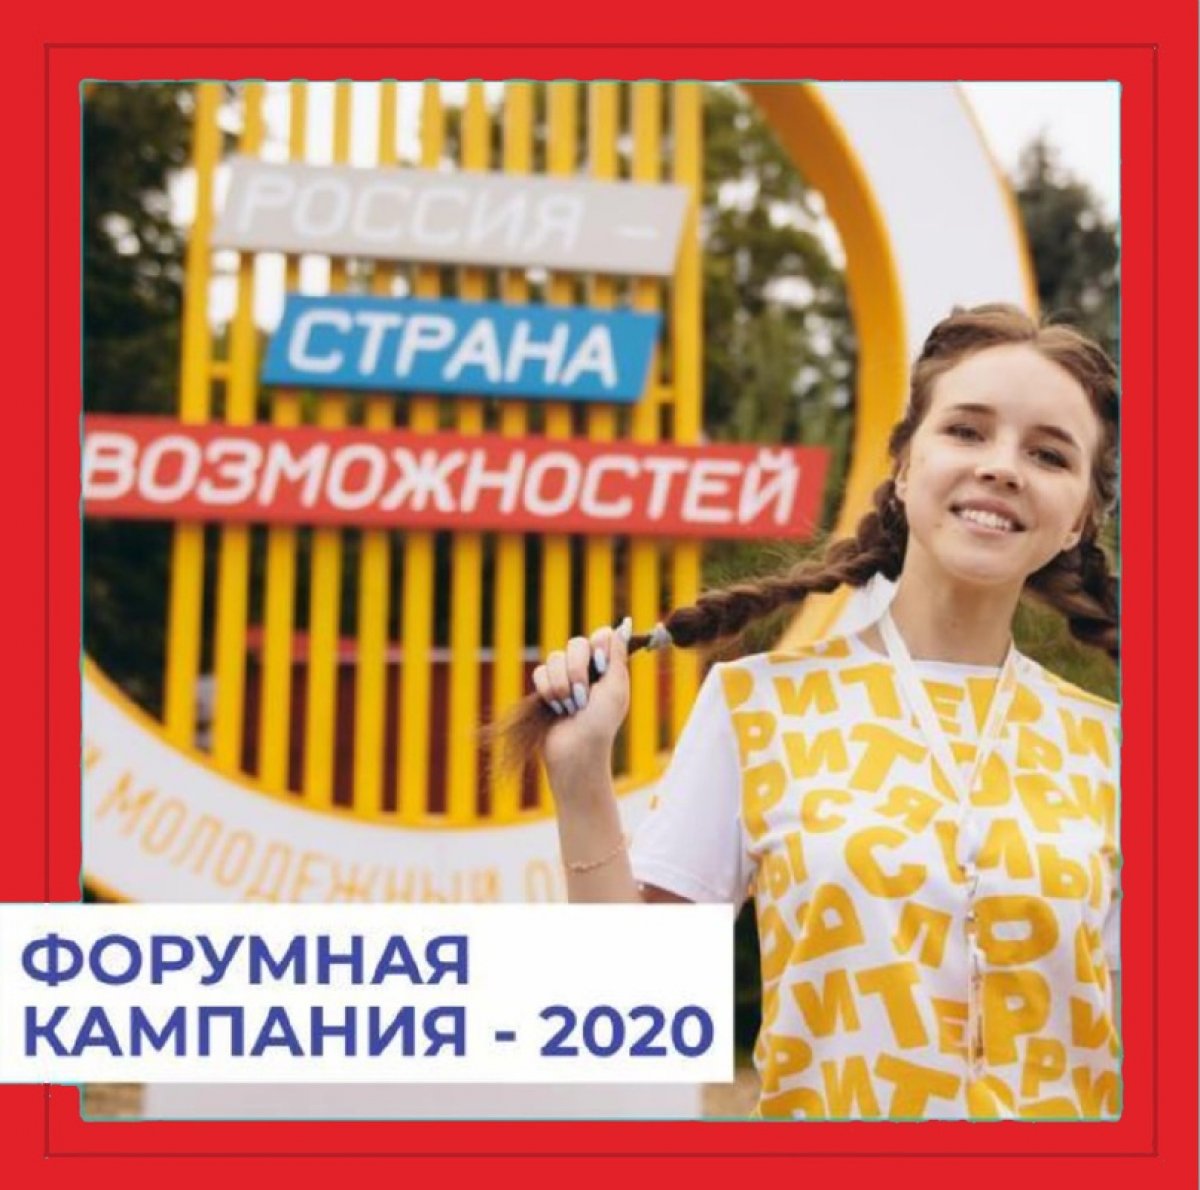 🥁 Всероссийская форумная кампания идёт полным ходом!